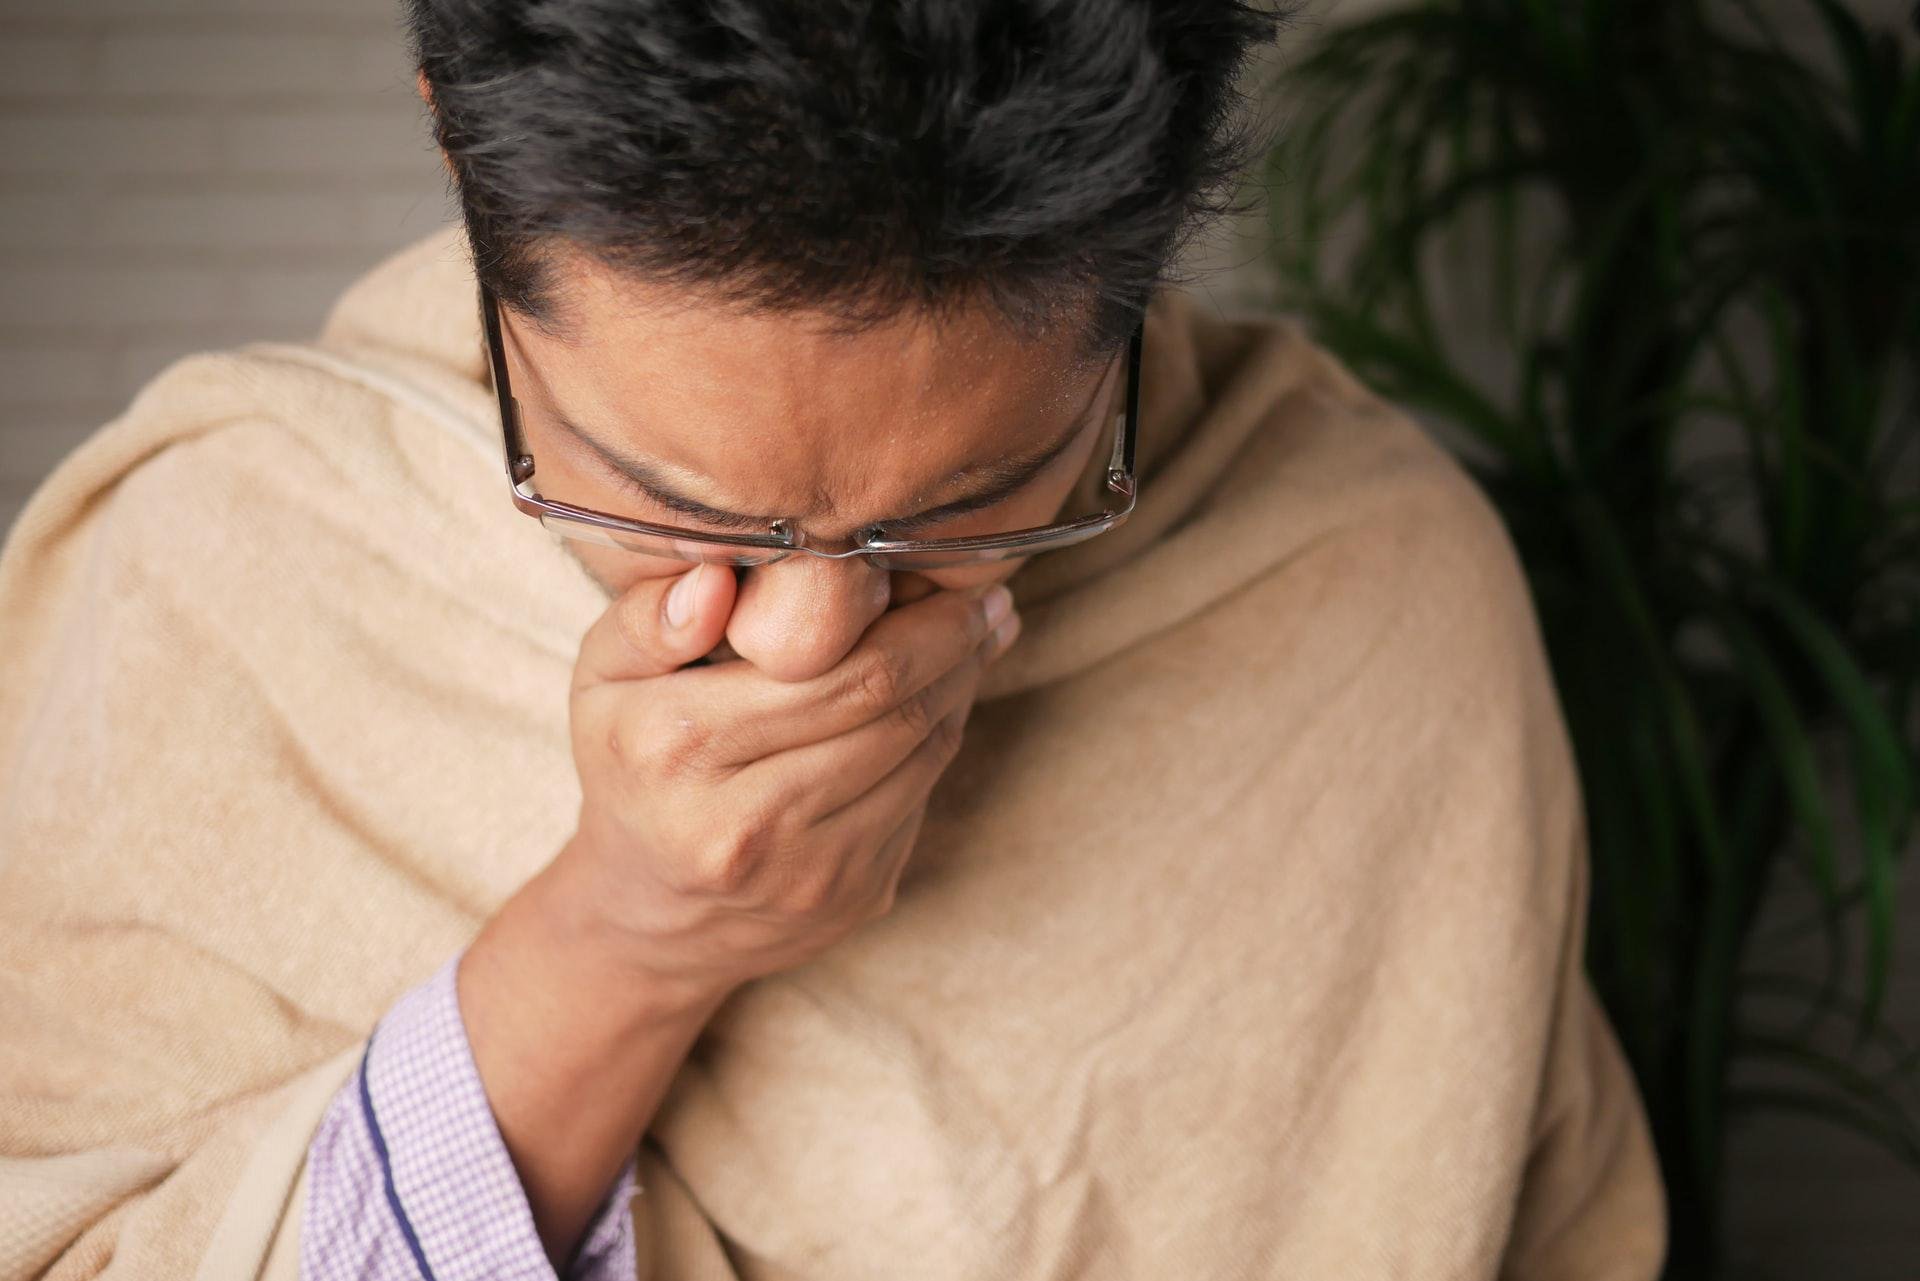 Quando causada por resfriados, a dor de garganta pode ser acompanhada de coriza e espirros (Fonte: Unplash/Towfiqu barbhuiya)